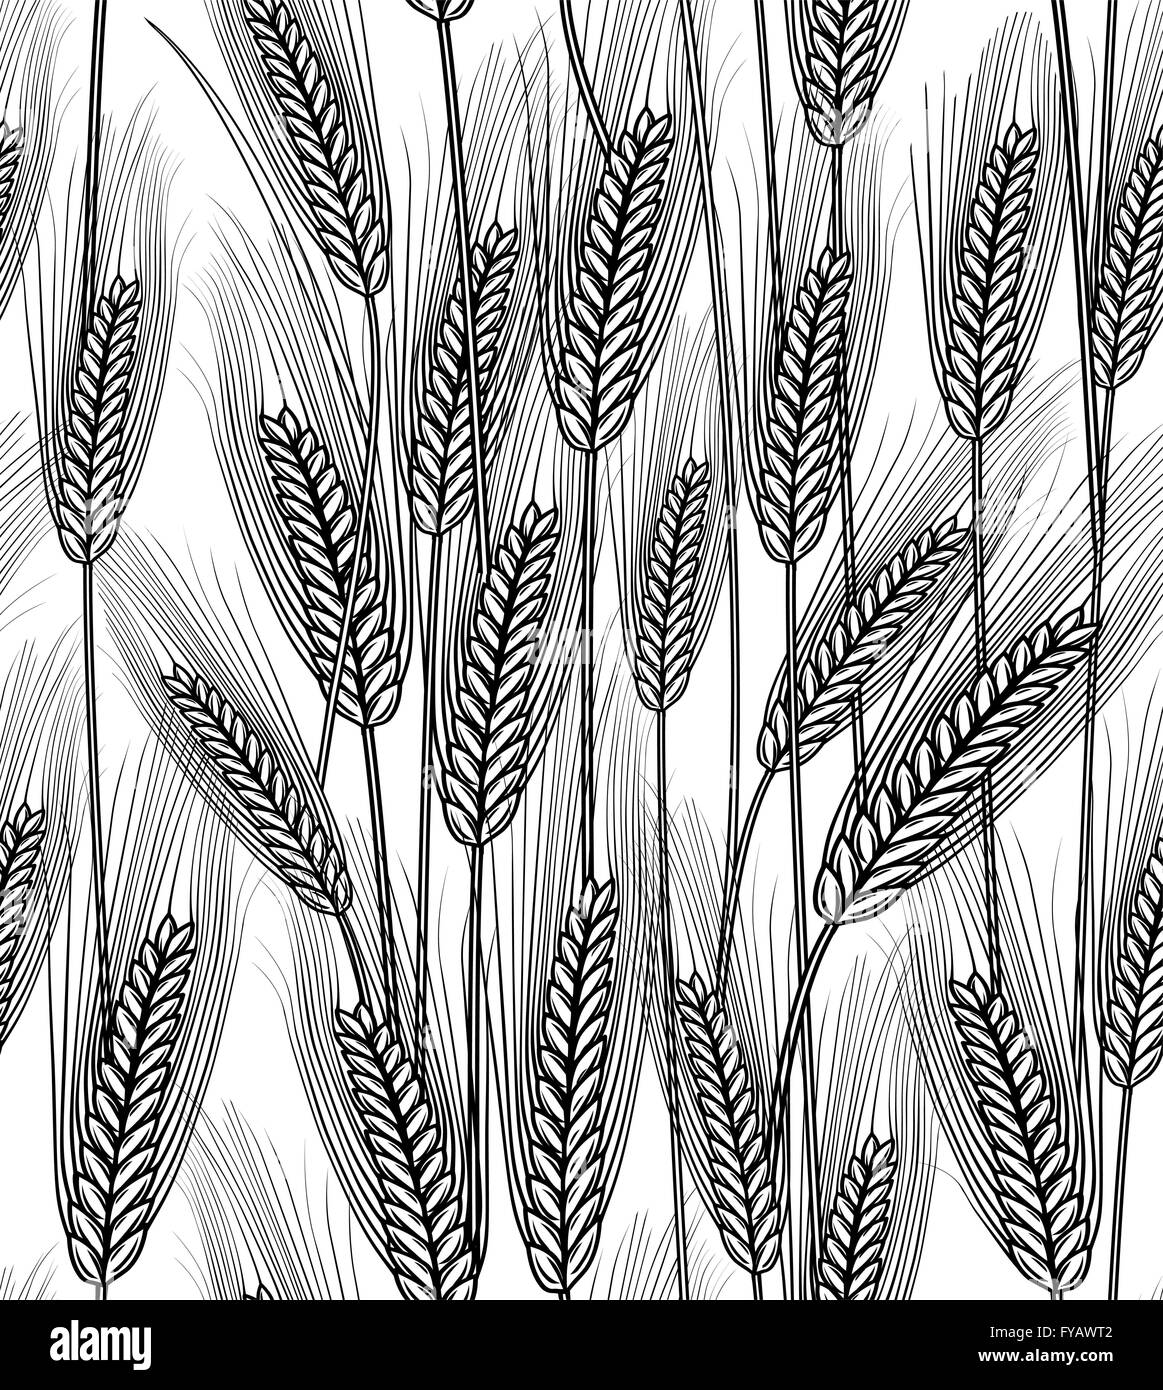 Seamless spighe di grano sullo sfondo Illustrazione Vettoriale